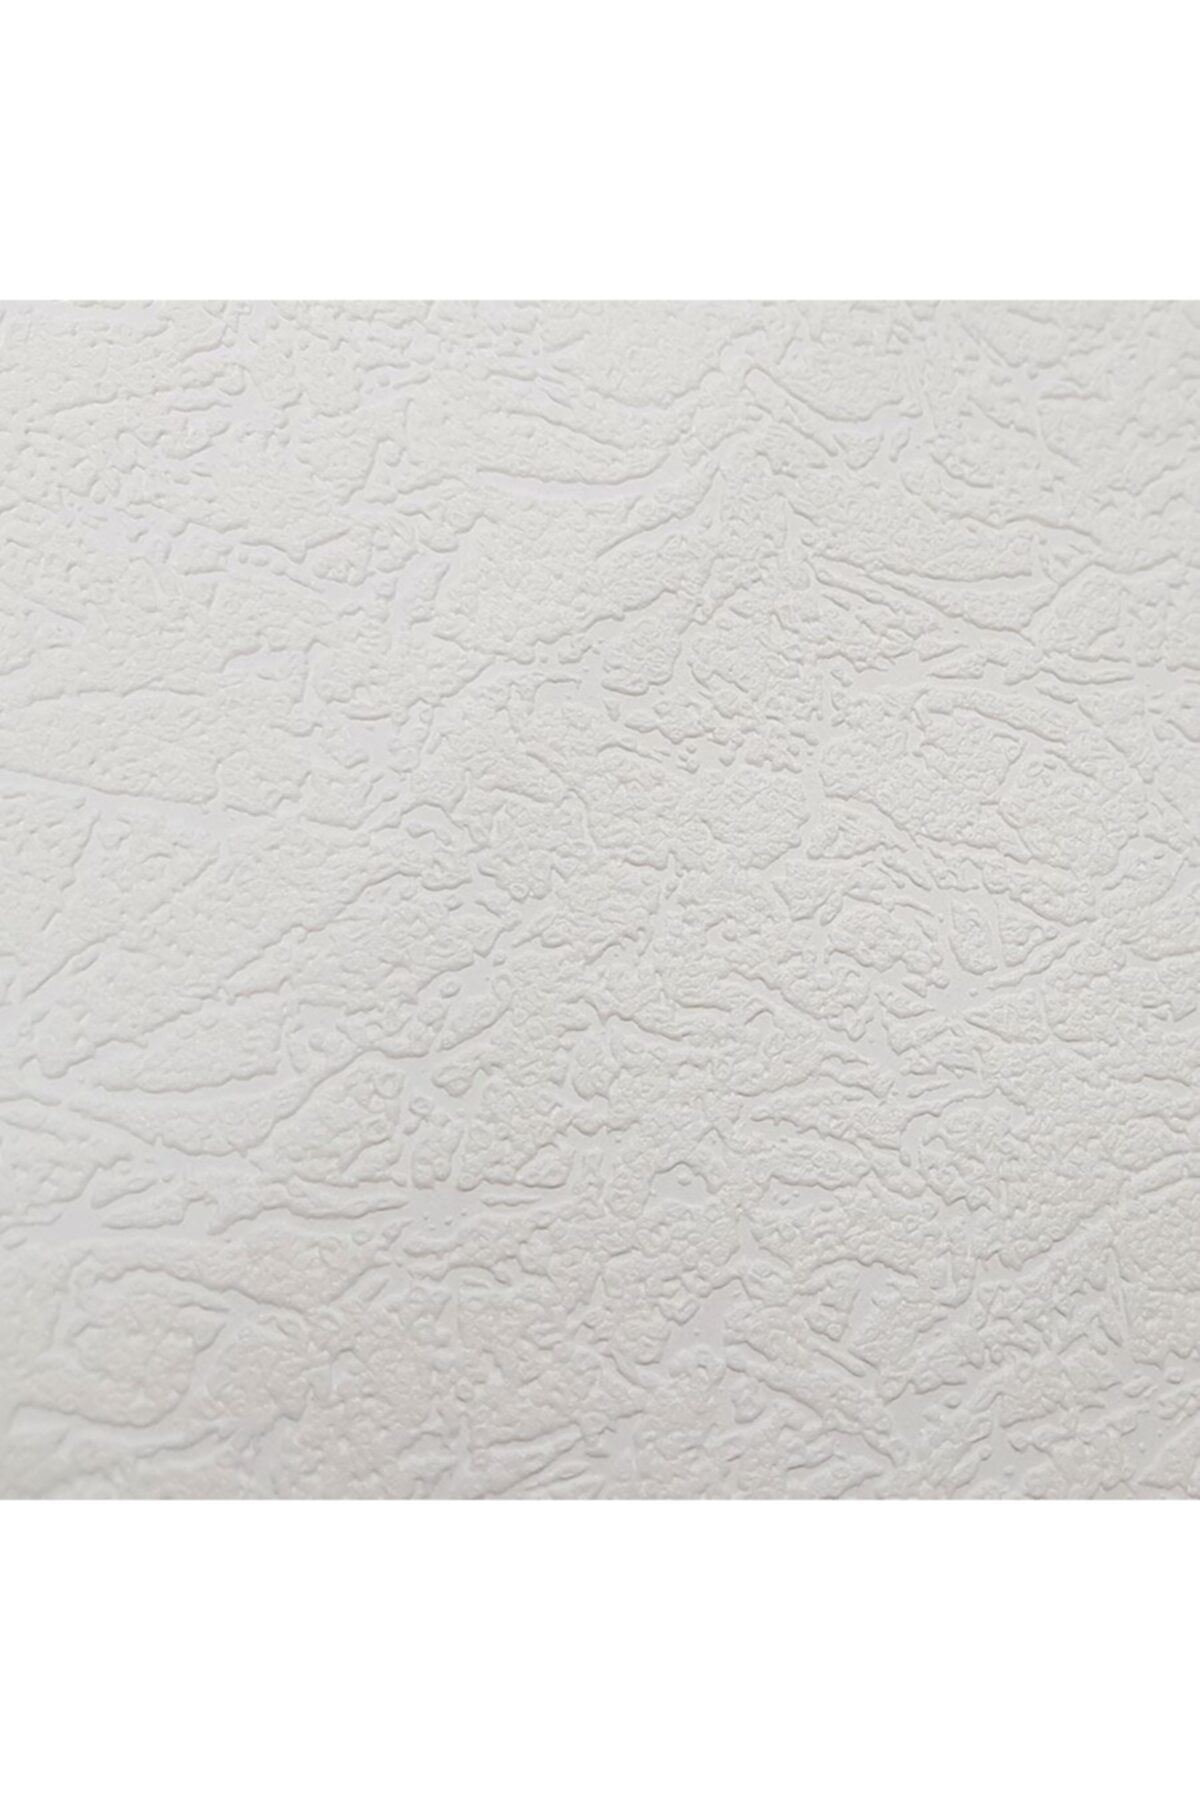 Genel Markalar Boyanabilir Çatlak Desen duvar & Tavan Kağıdı 26,5 M2